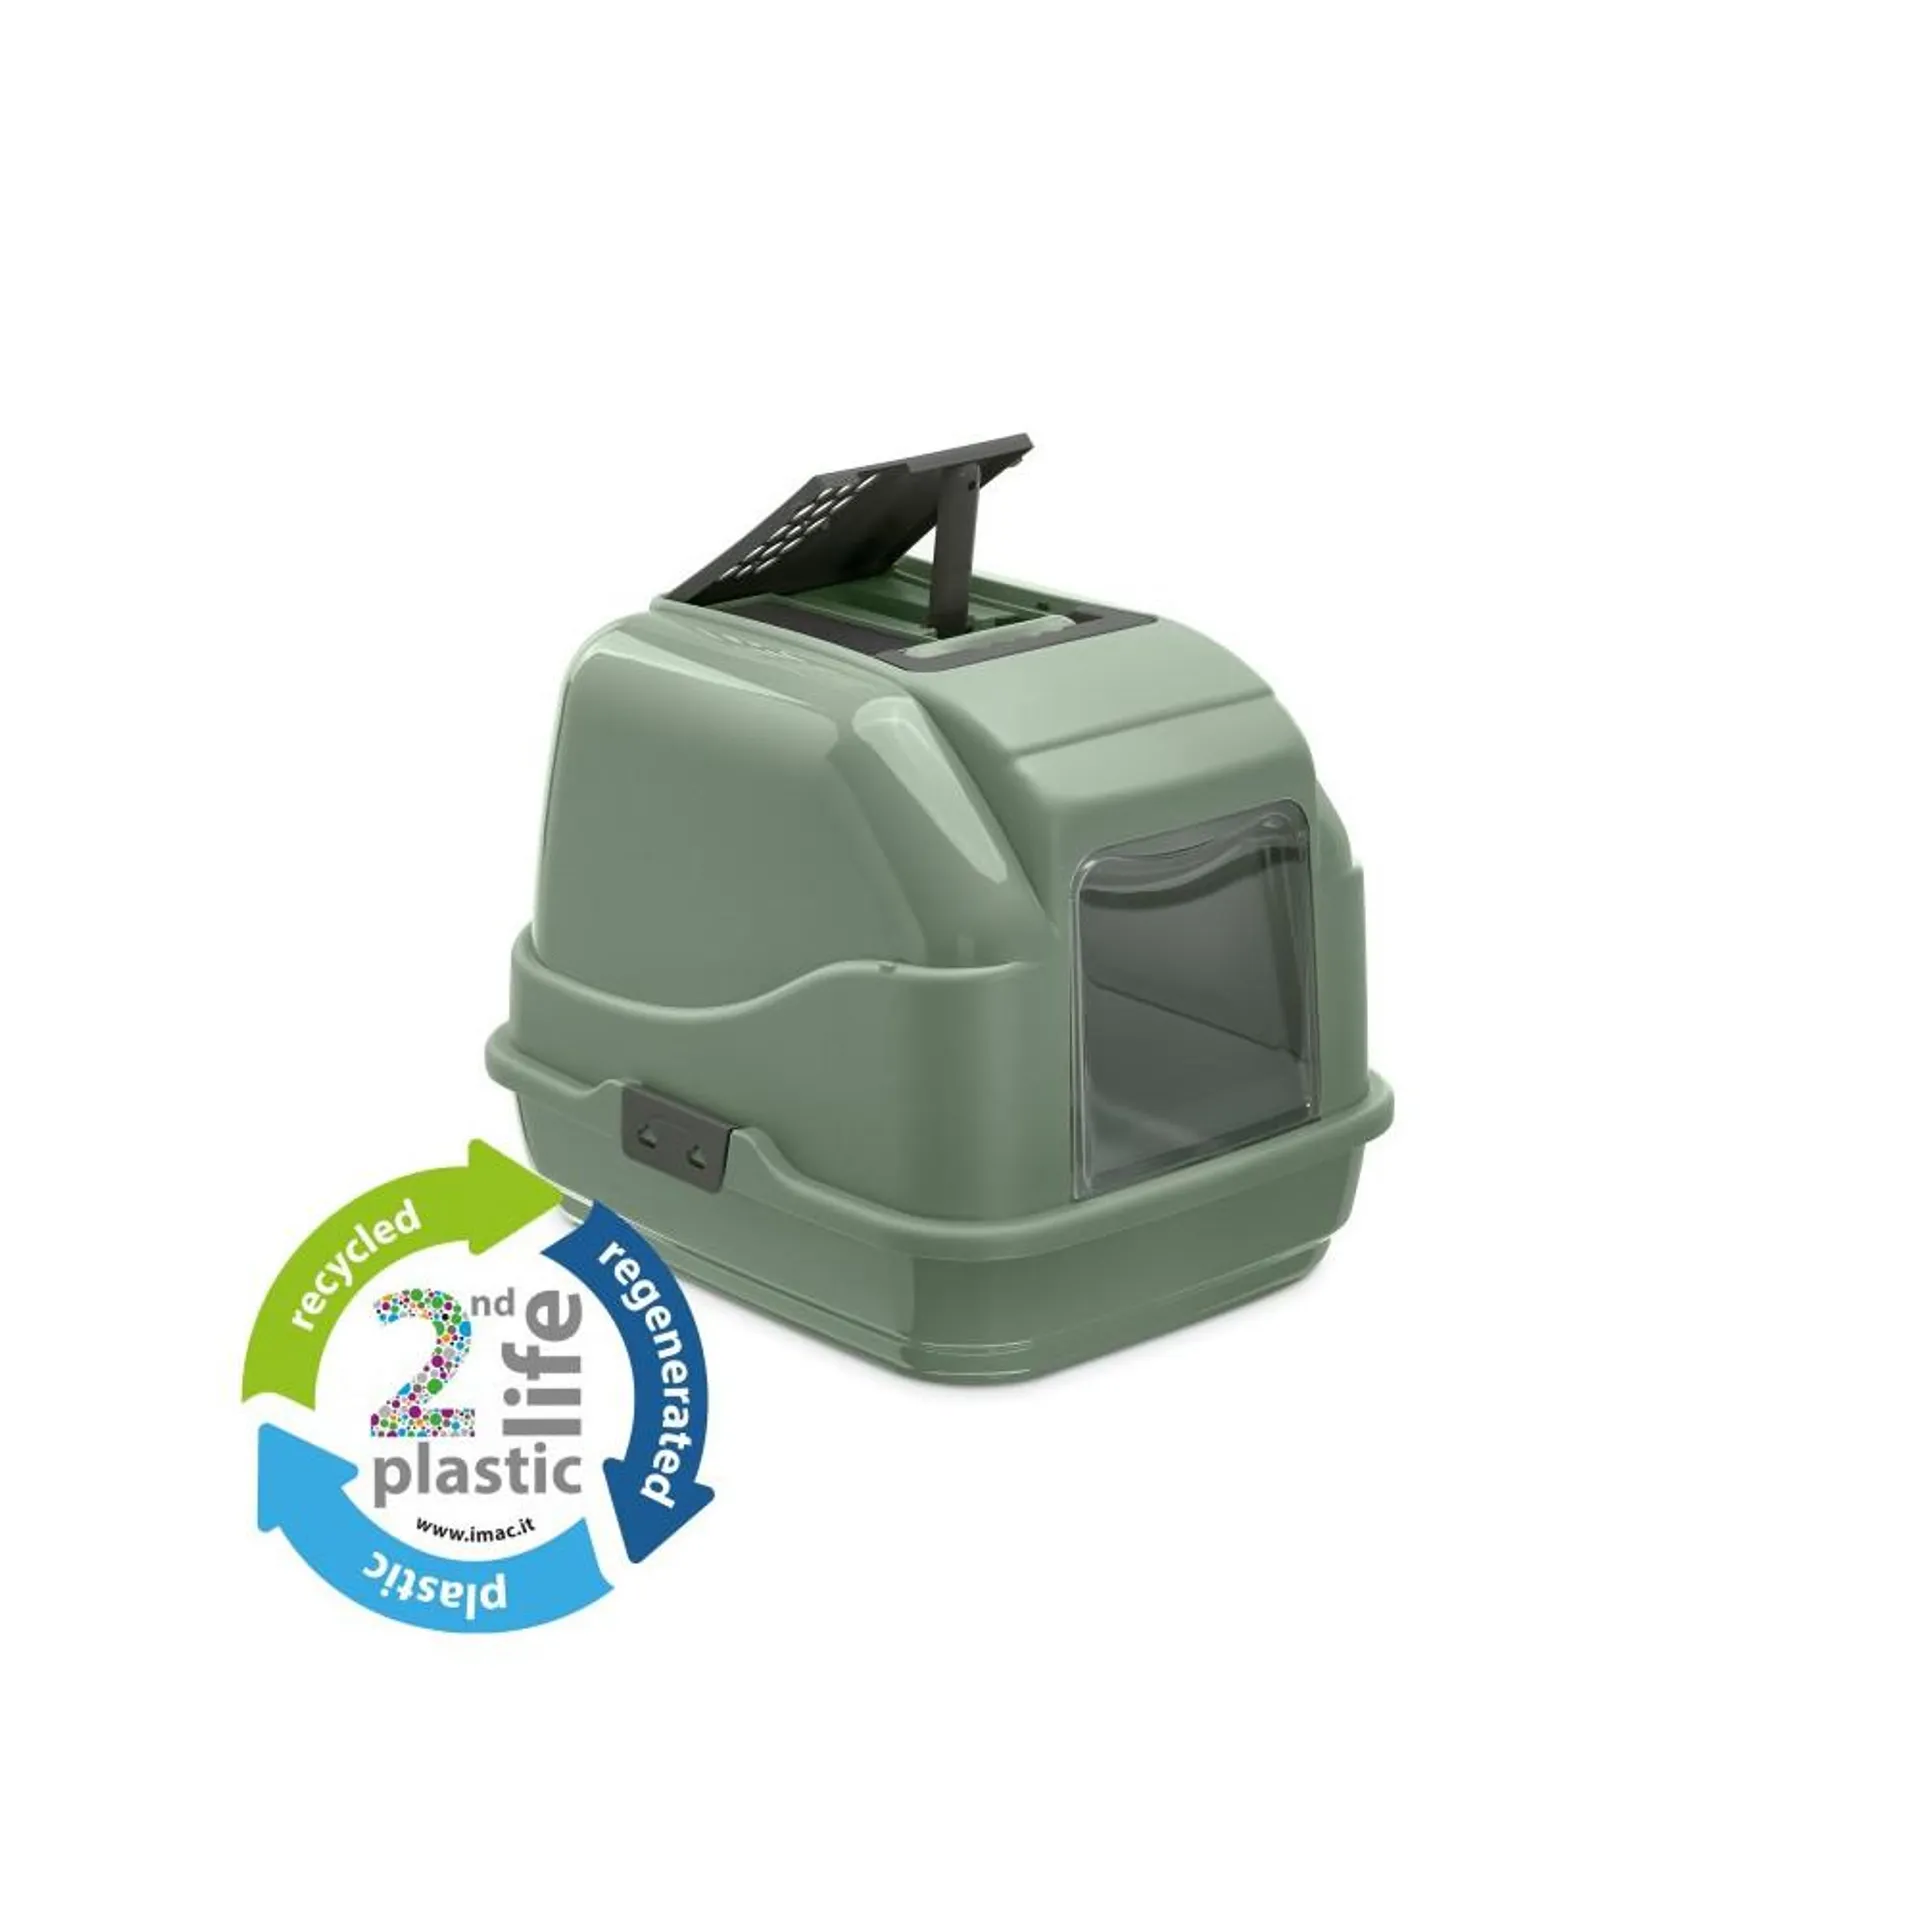 Caseta Higiénica Arenero Verde Gatos IMAC. 100% Plástico Reciclado